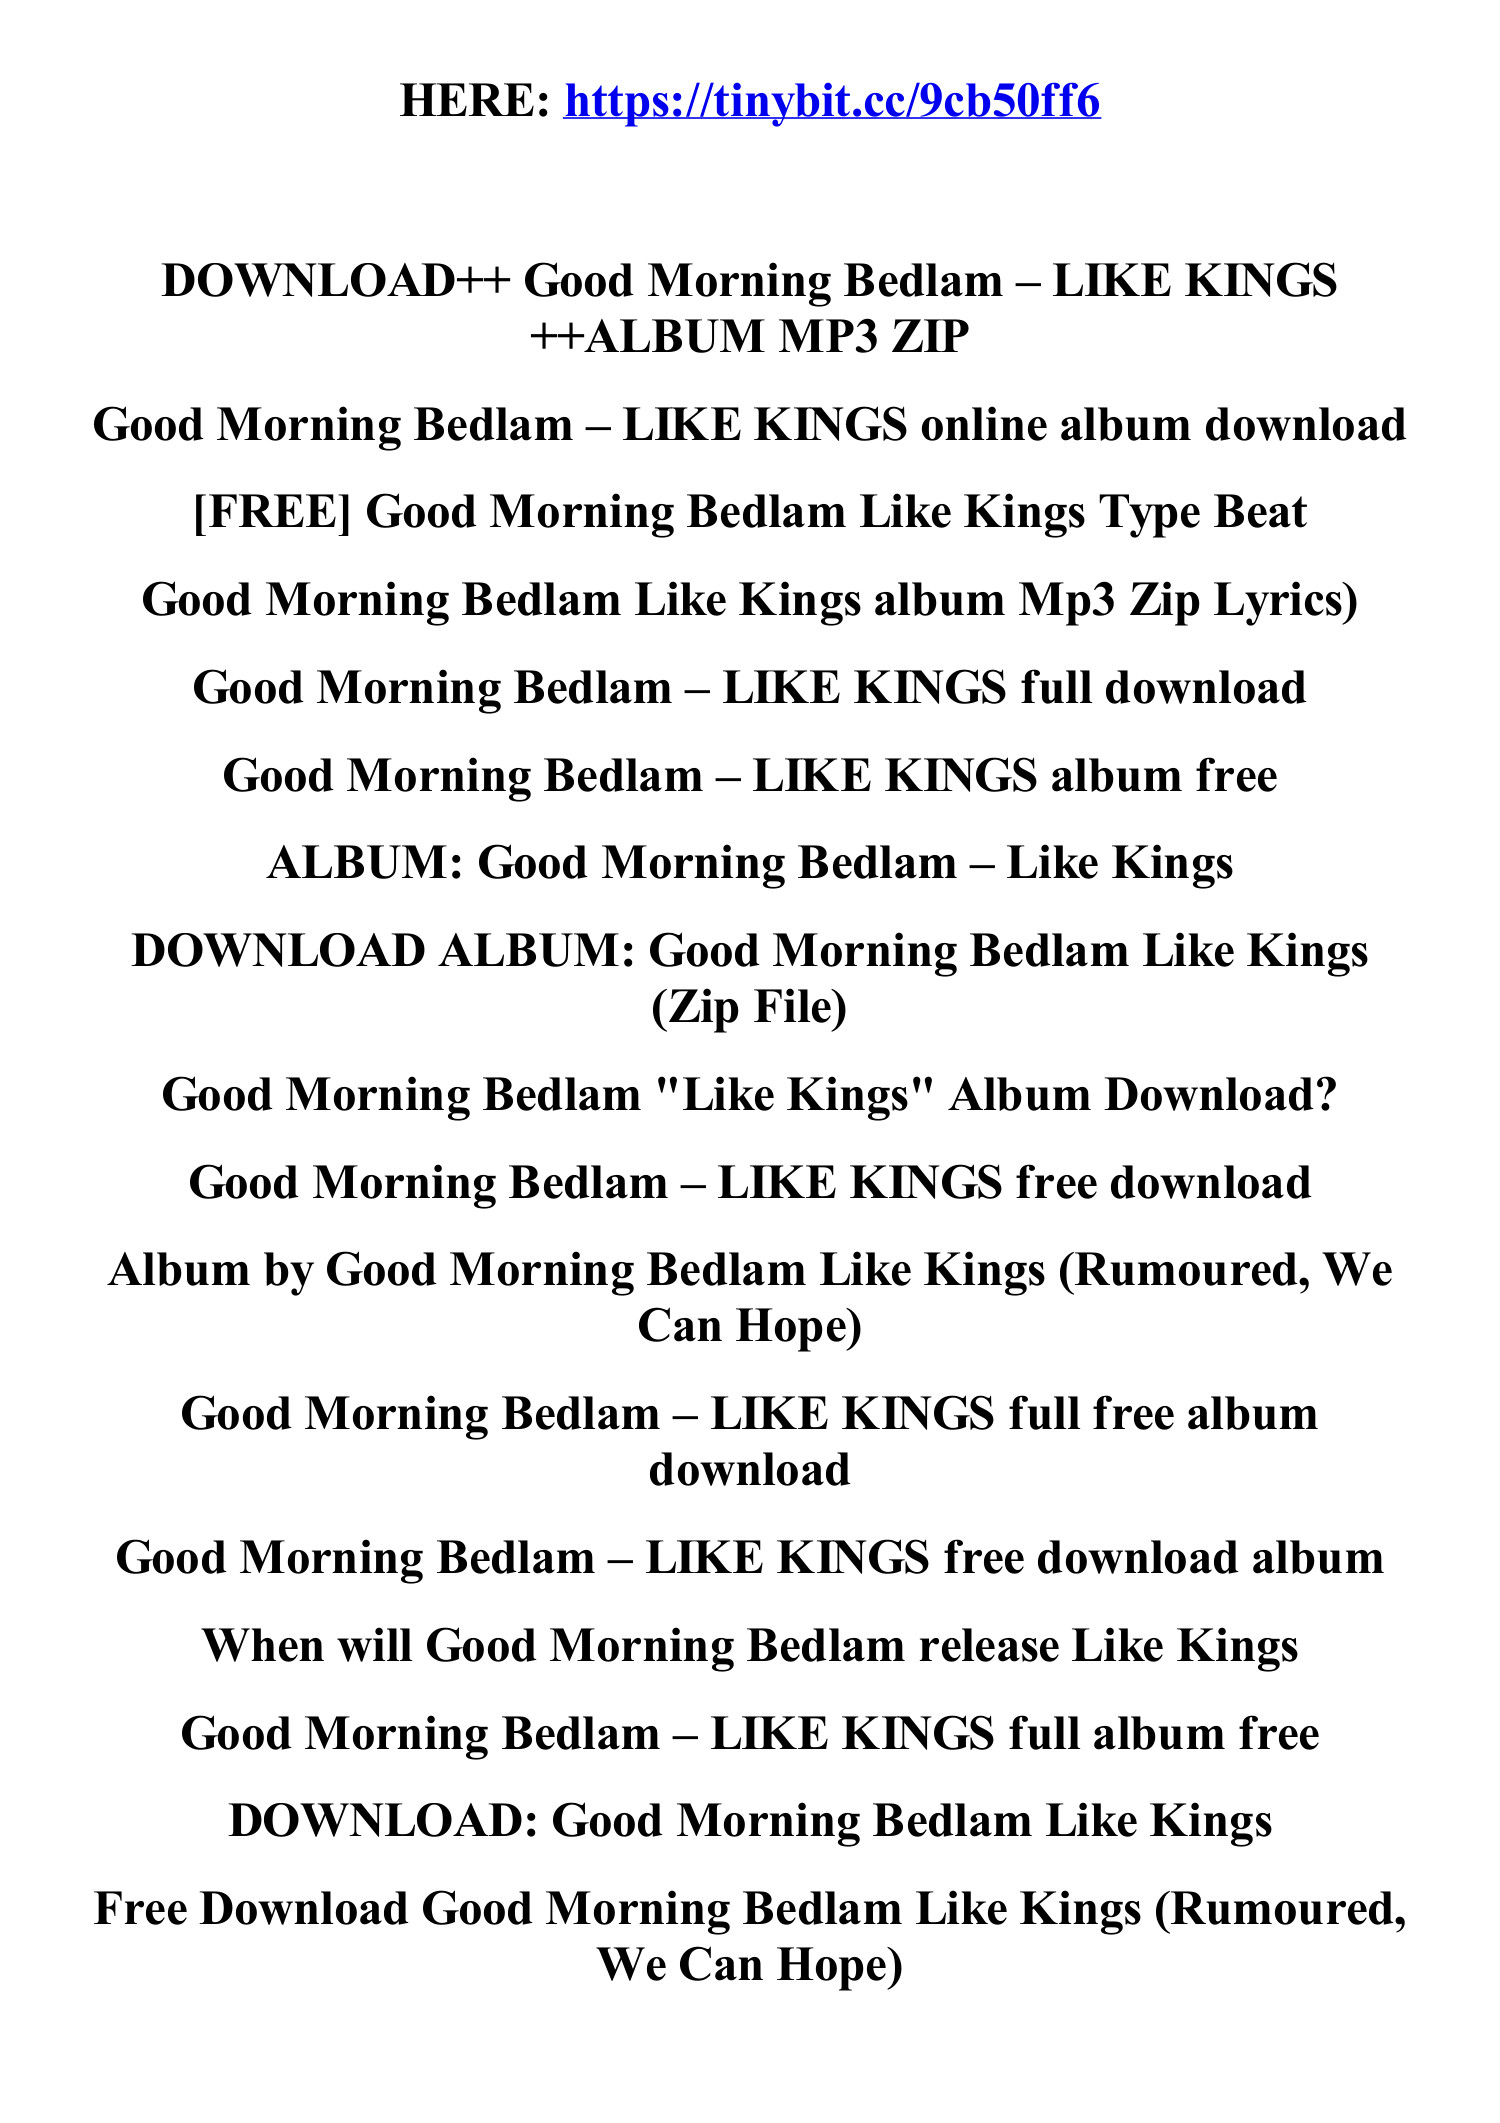 Lyrics — Good Morning Bedlam